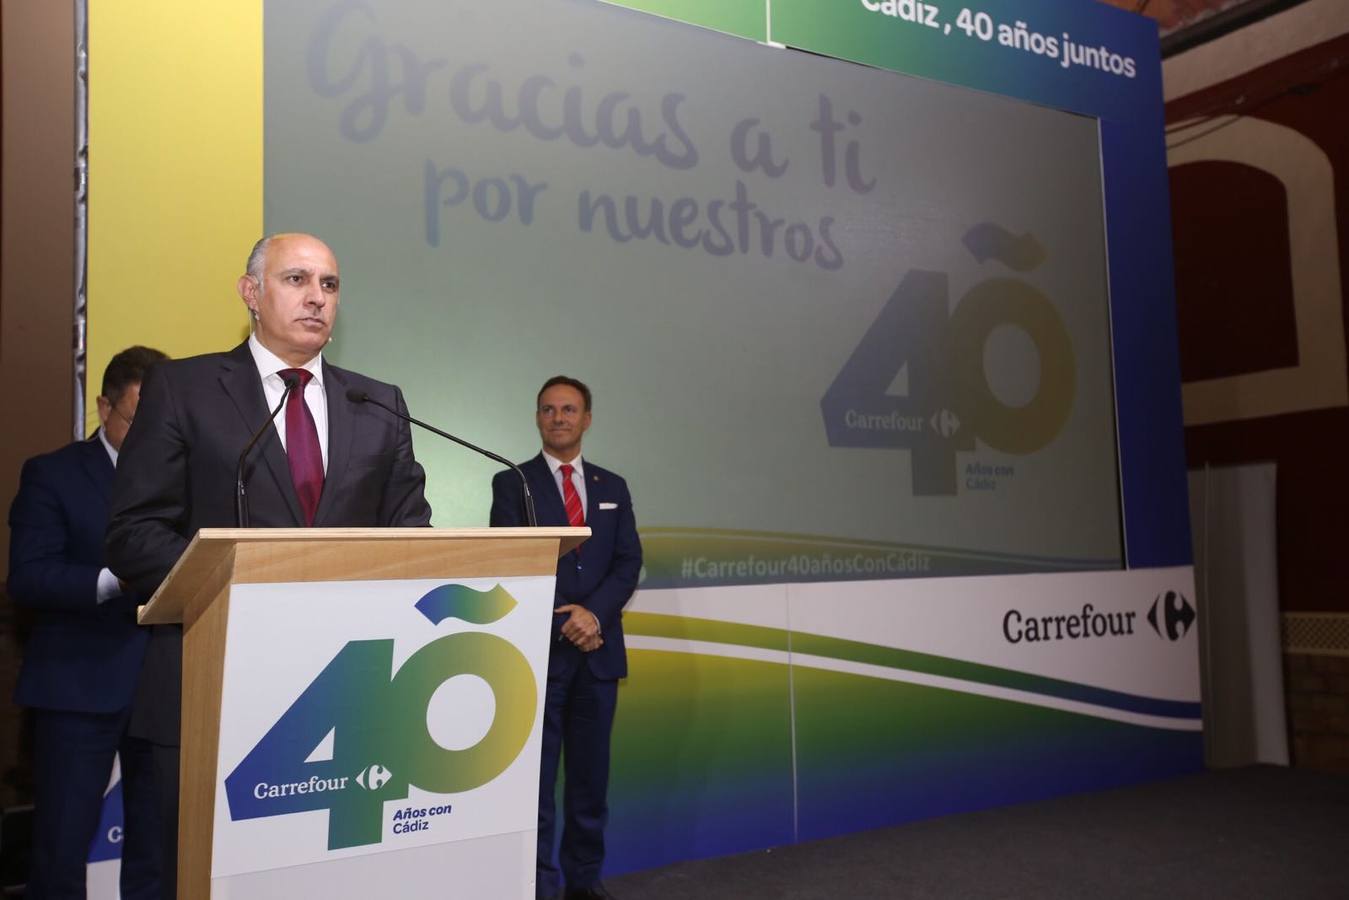 Carrefour celebra 40 años en Cádiz